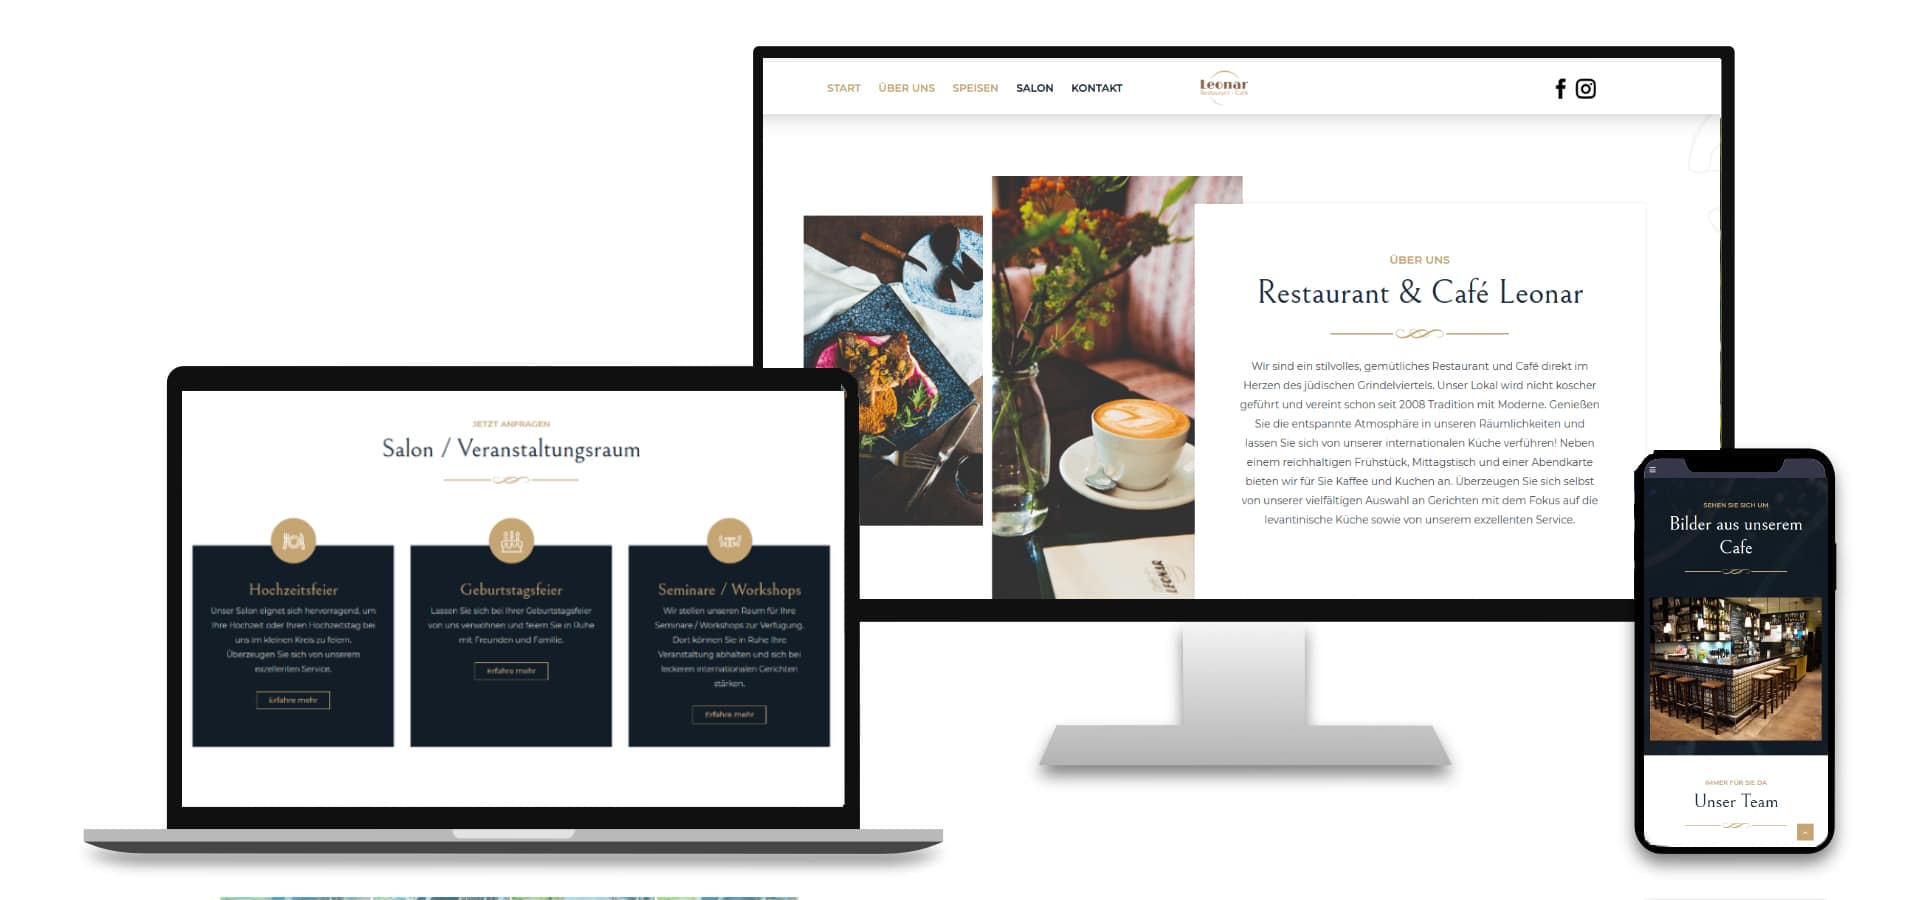 Cafe Leonar Webdesign Mockup